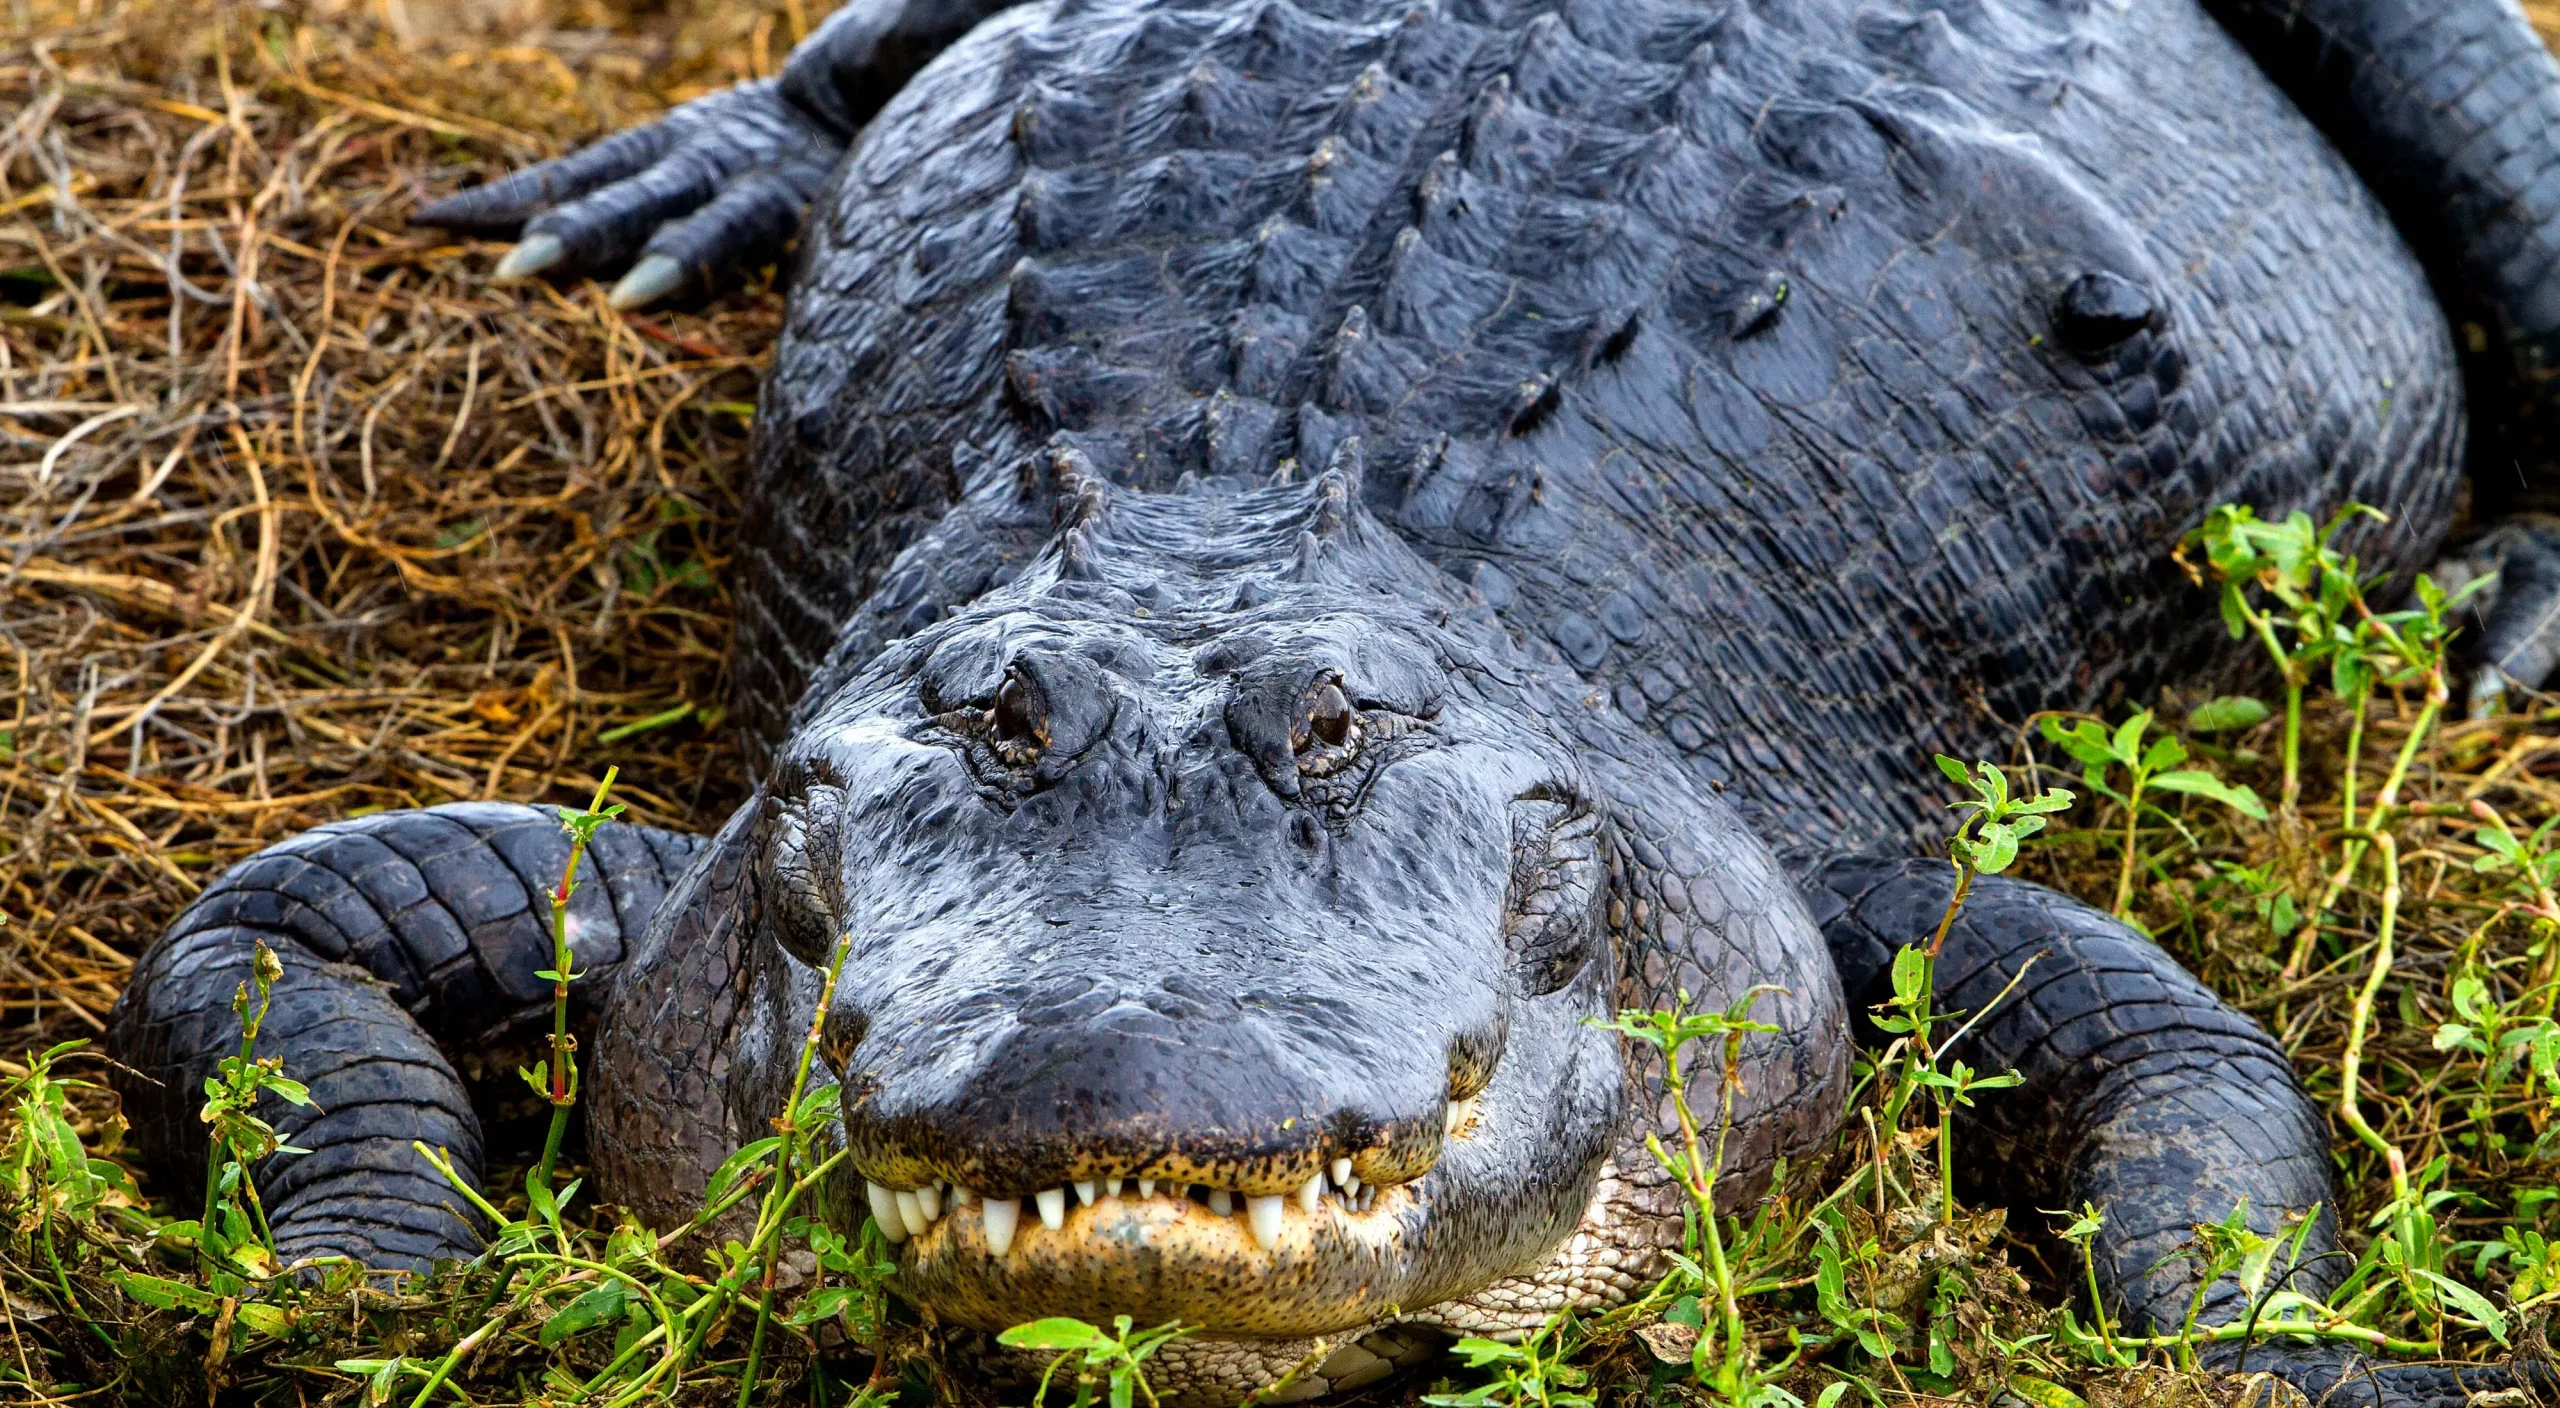 Facts about Alligators